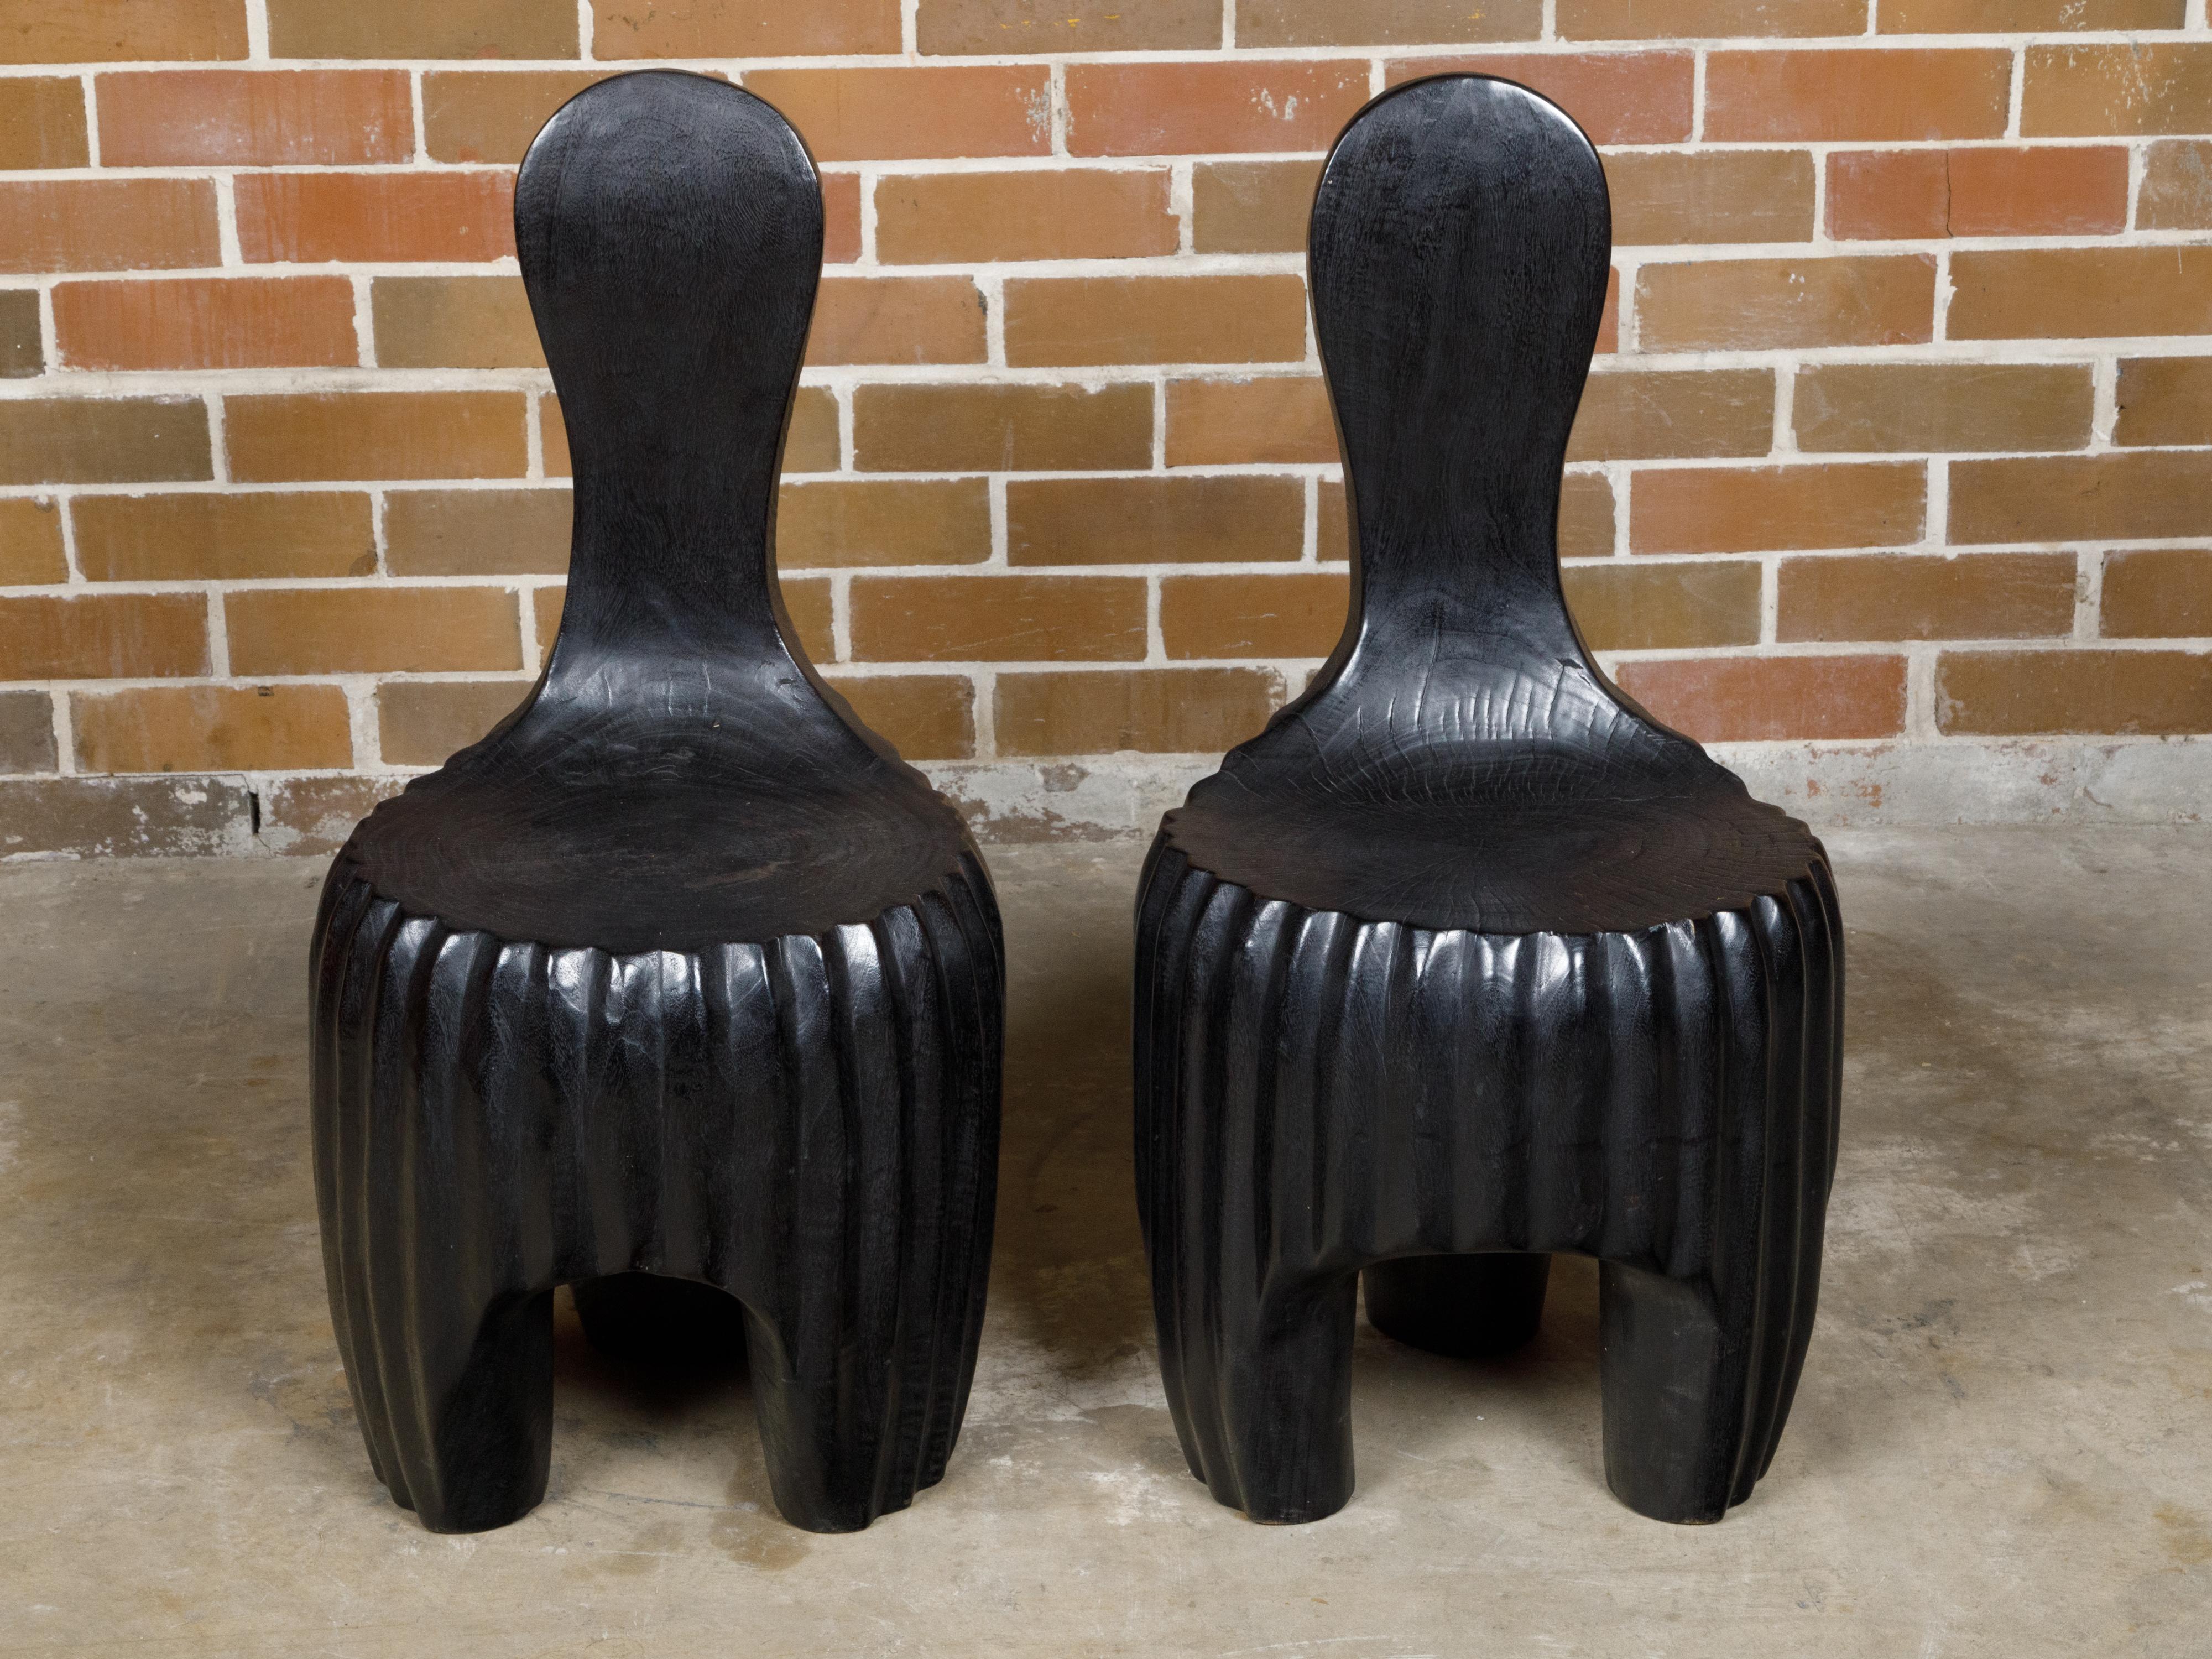 Paire sculpturale de chaises noires en bois africain du milieu du siècle avec dossier en cuillère et bases cannelées sculptées. Cette paire sculpturale de chaises en bois africain du milieu du siècle incarne l'essence même de la conception